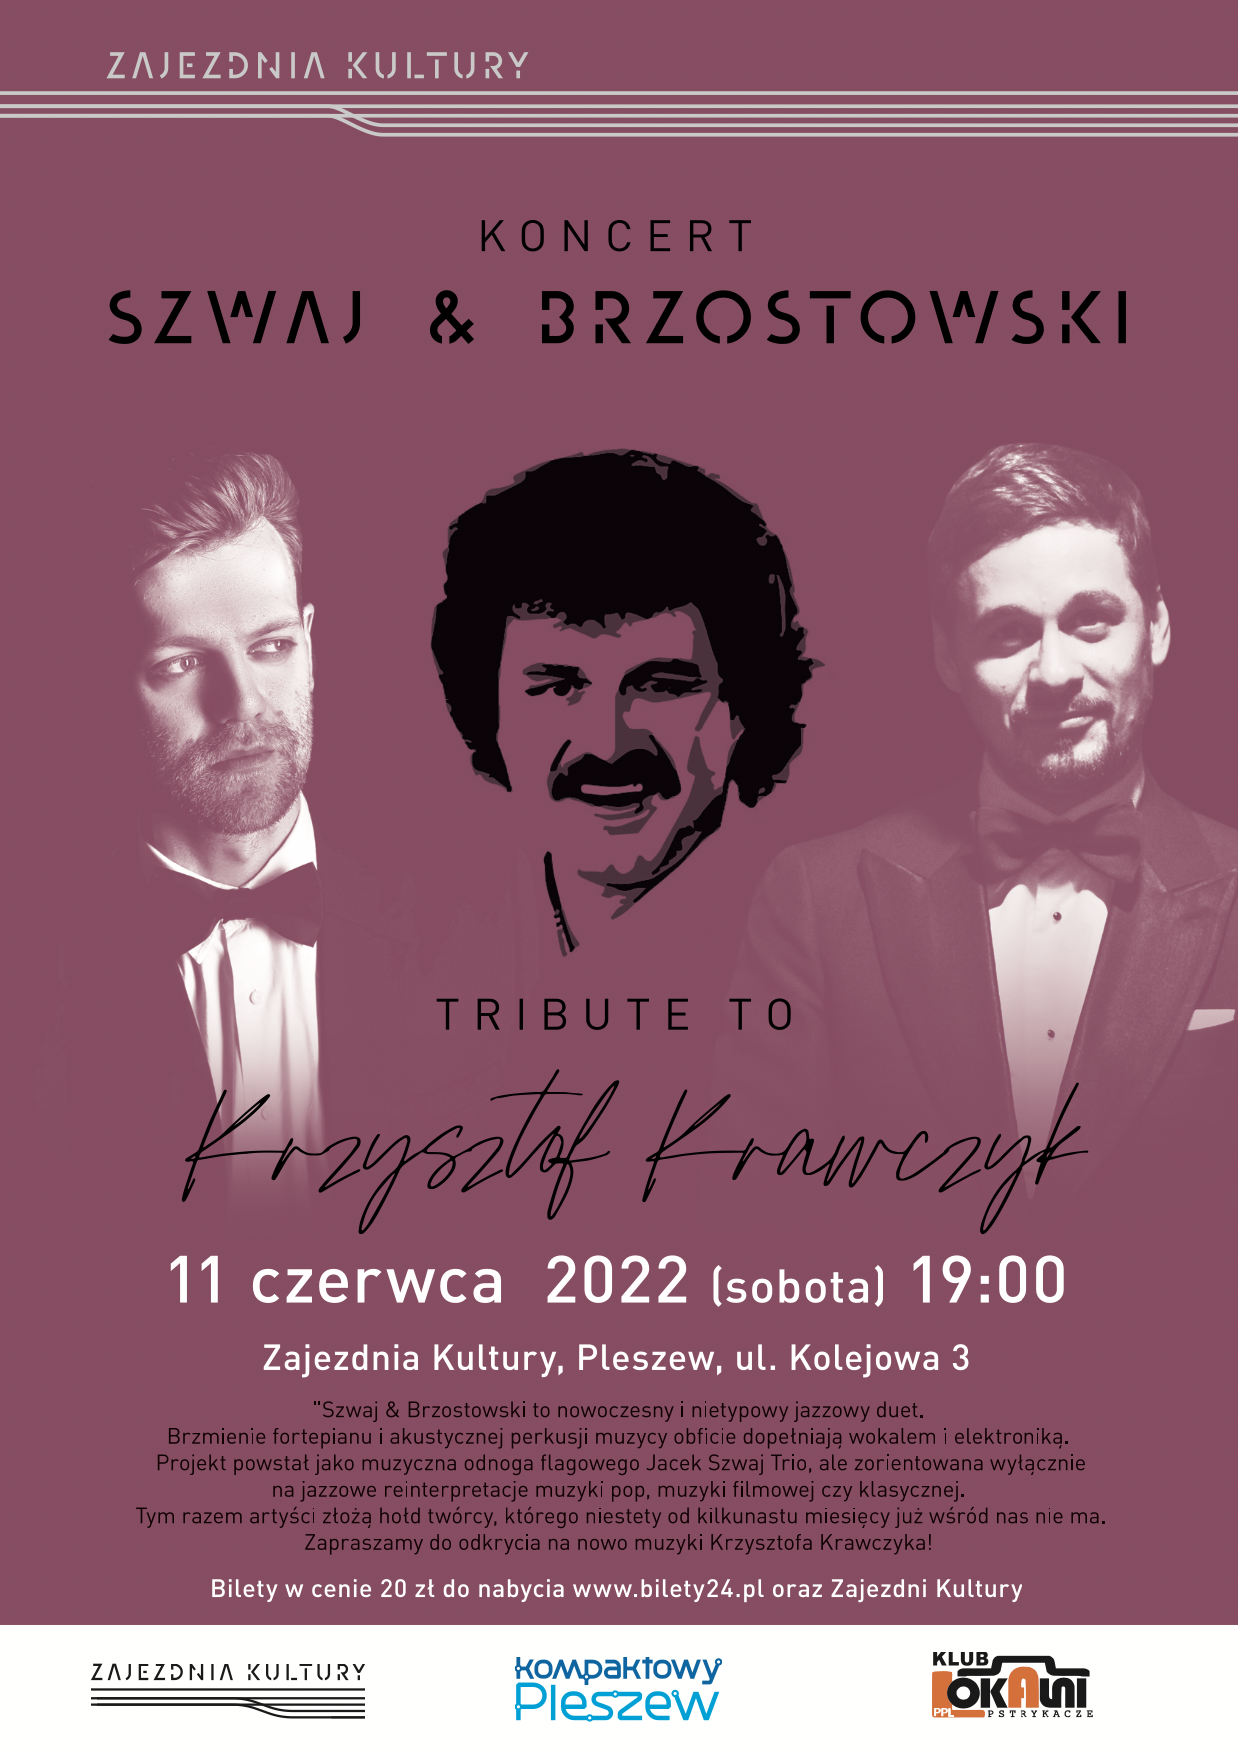 na zdjęciu widać Krzysztofa Krawczyka oraz dwóch muzyków wykonujących jego utwory i szczegóły wydarzenia w Zajezdni Kultury